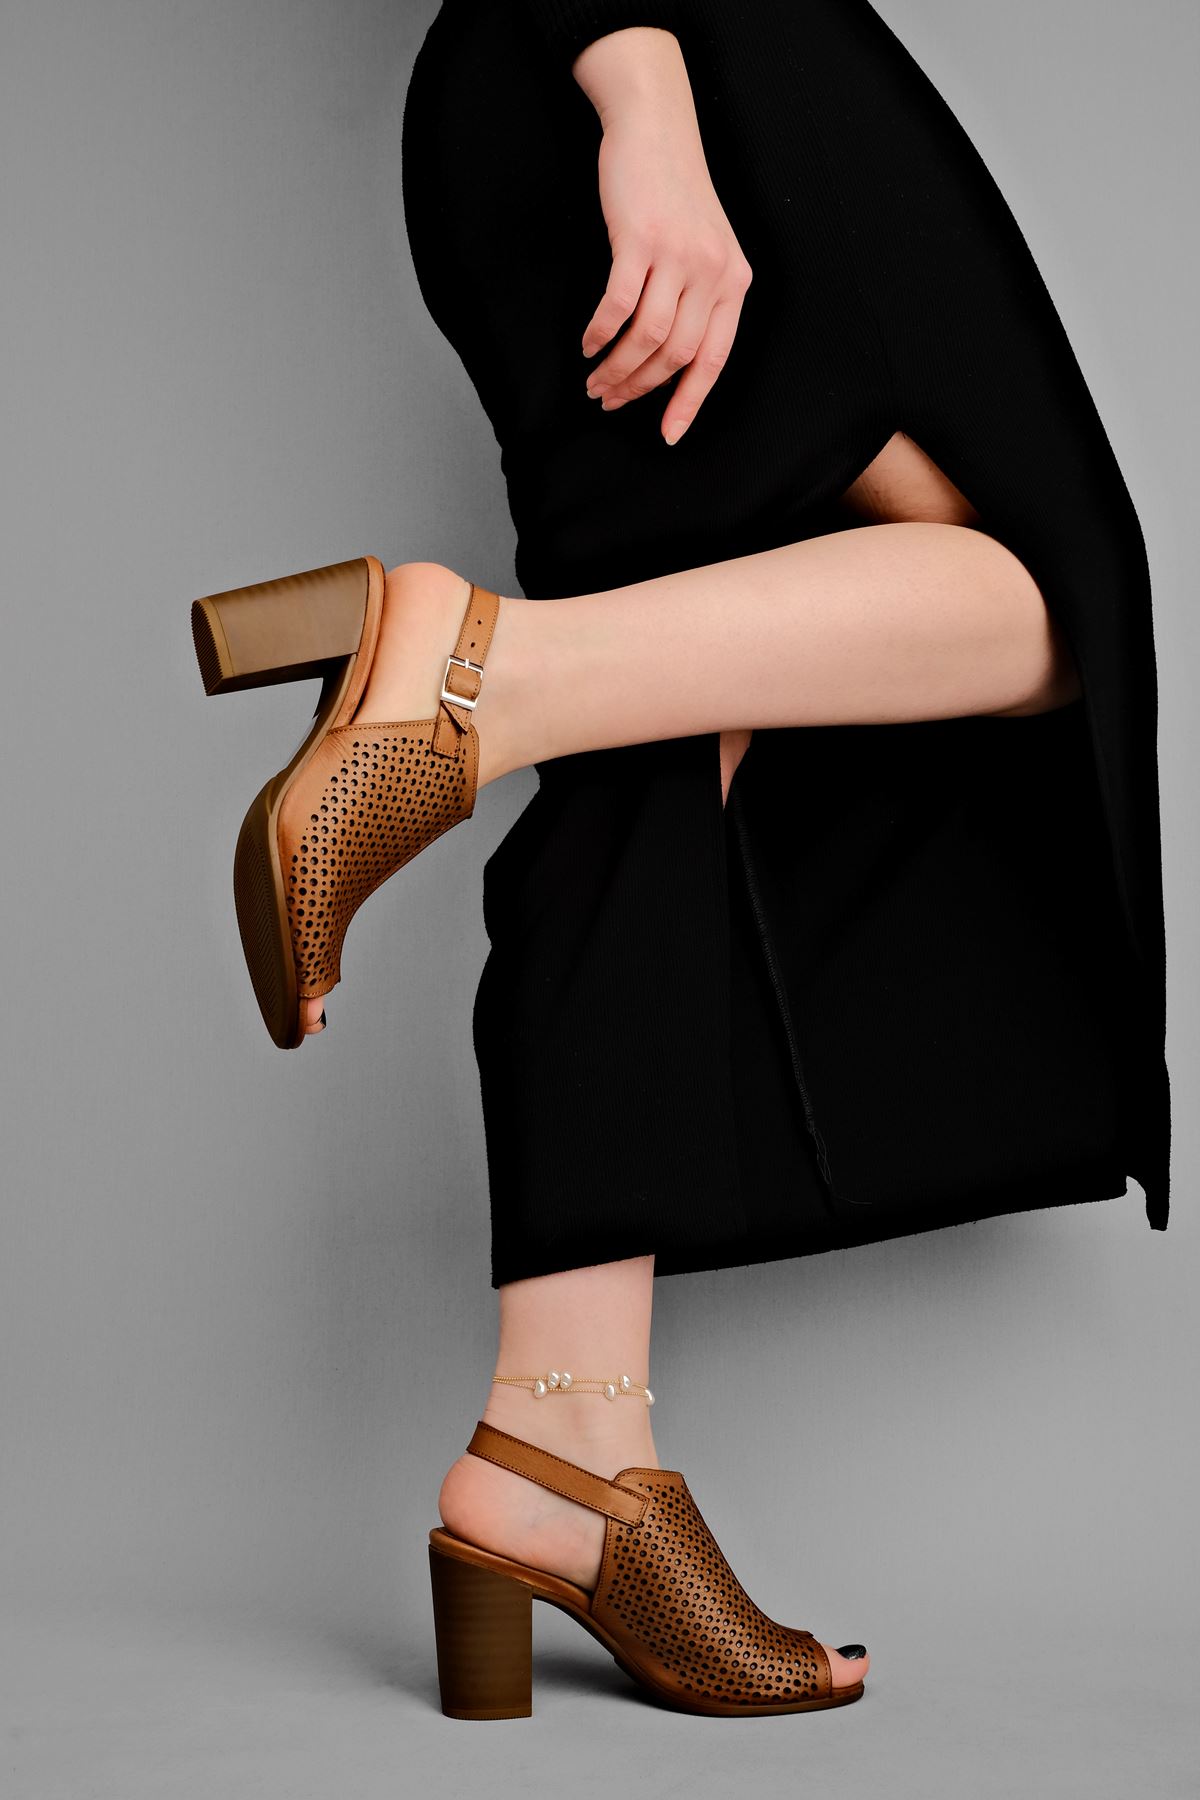 Vesta Kadın Hakiki Deri Topuklu Ayakkabı Üstü Delikli-Taba